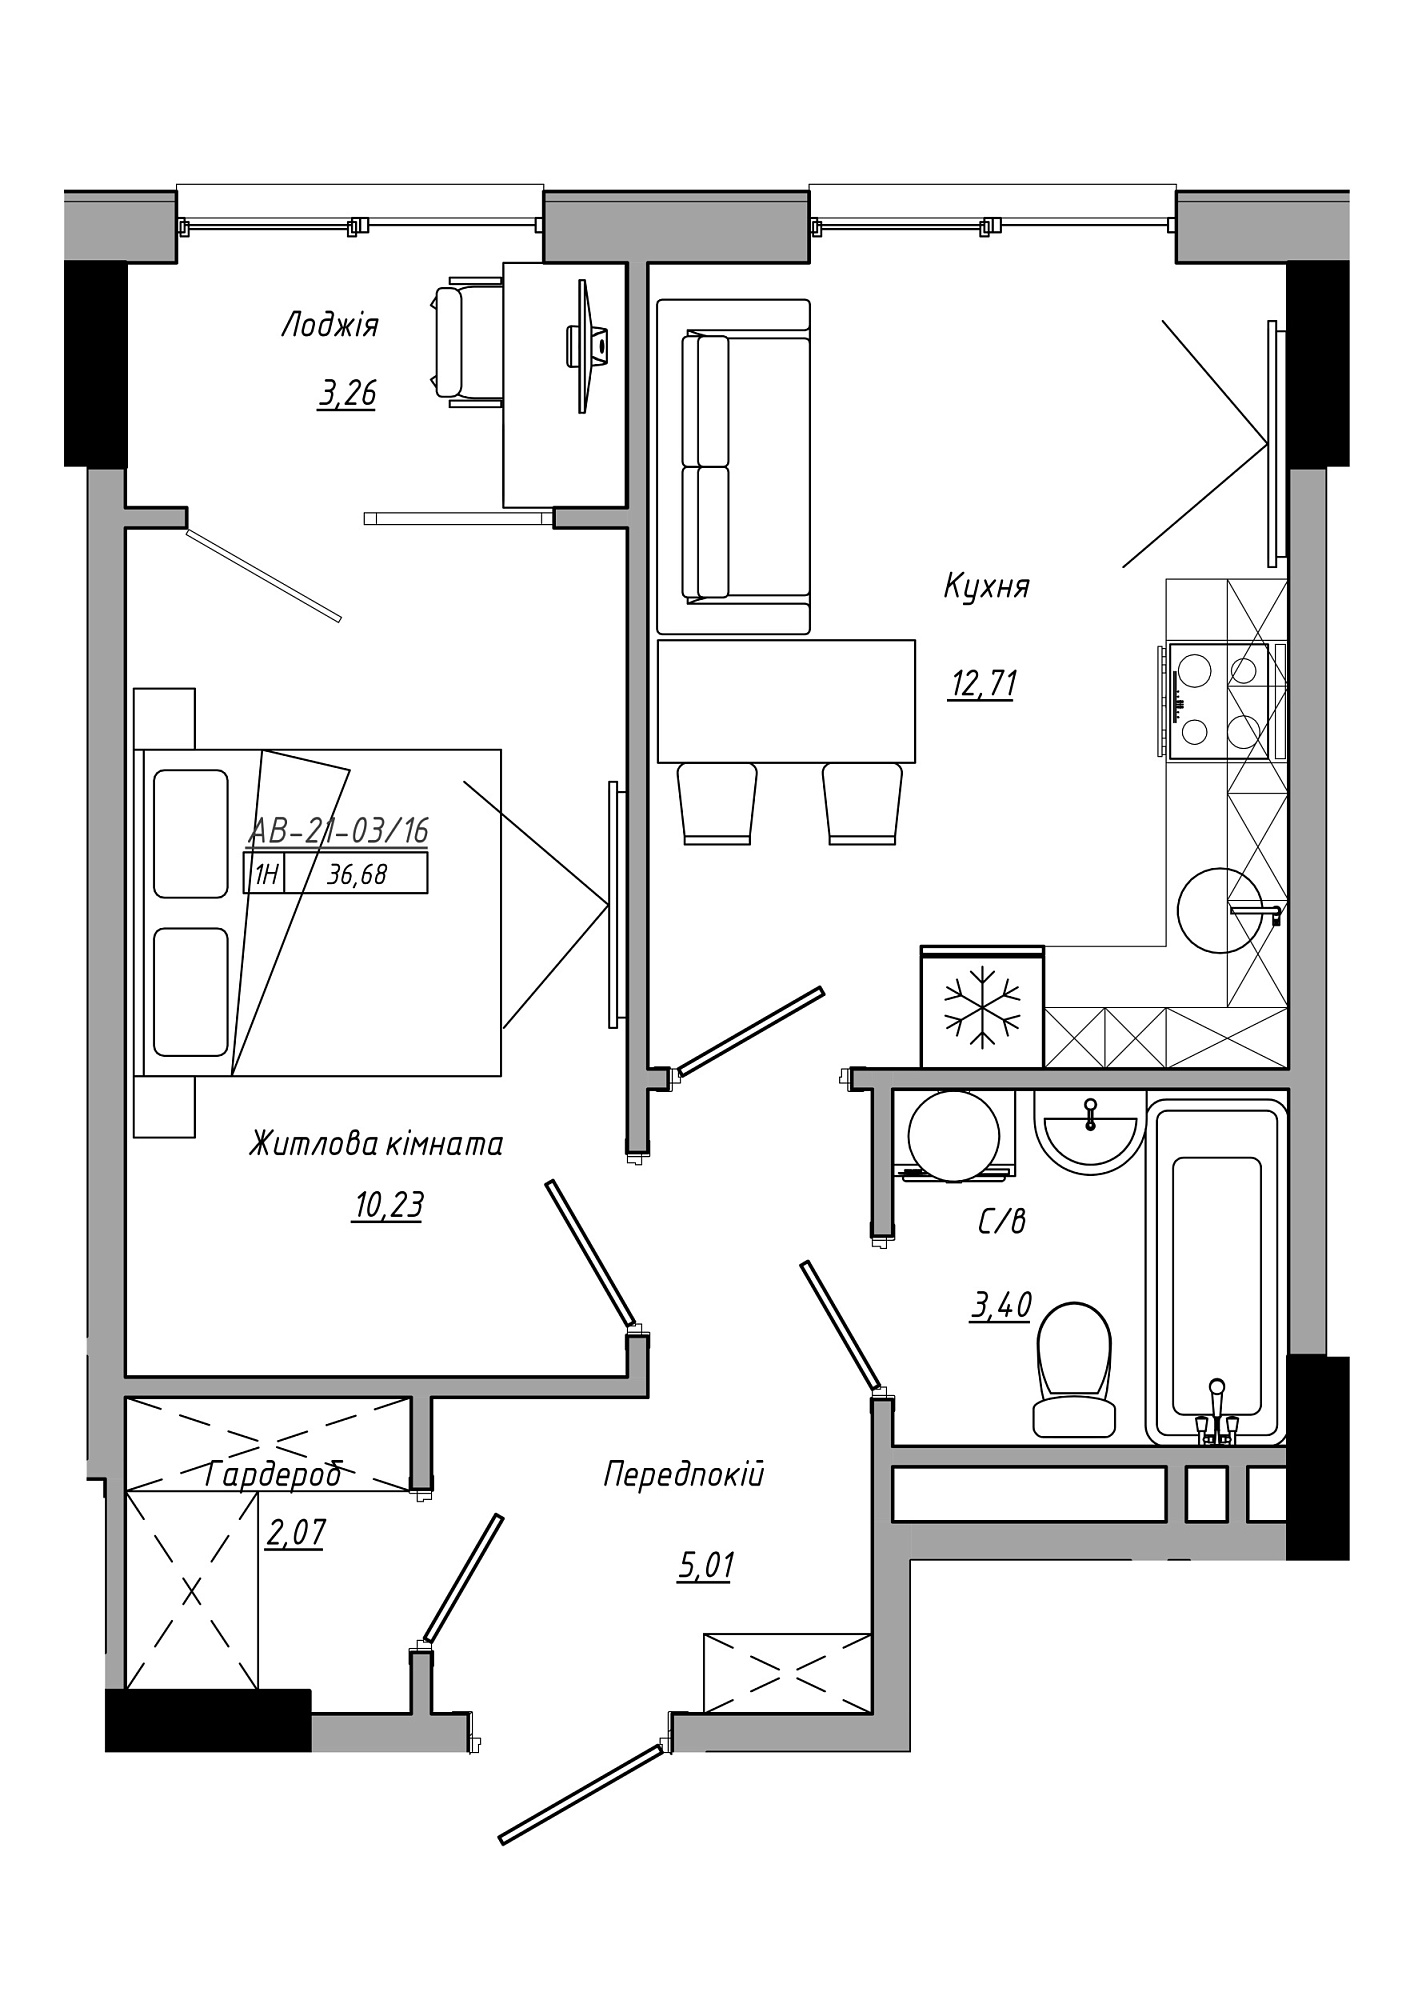 Планування 1-к квартира площею 36.68м2, AB-21-03/00016.